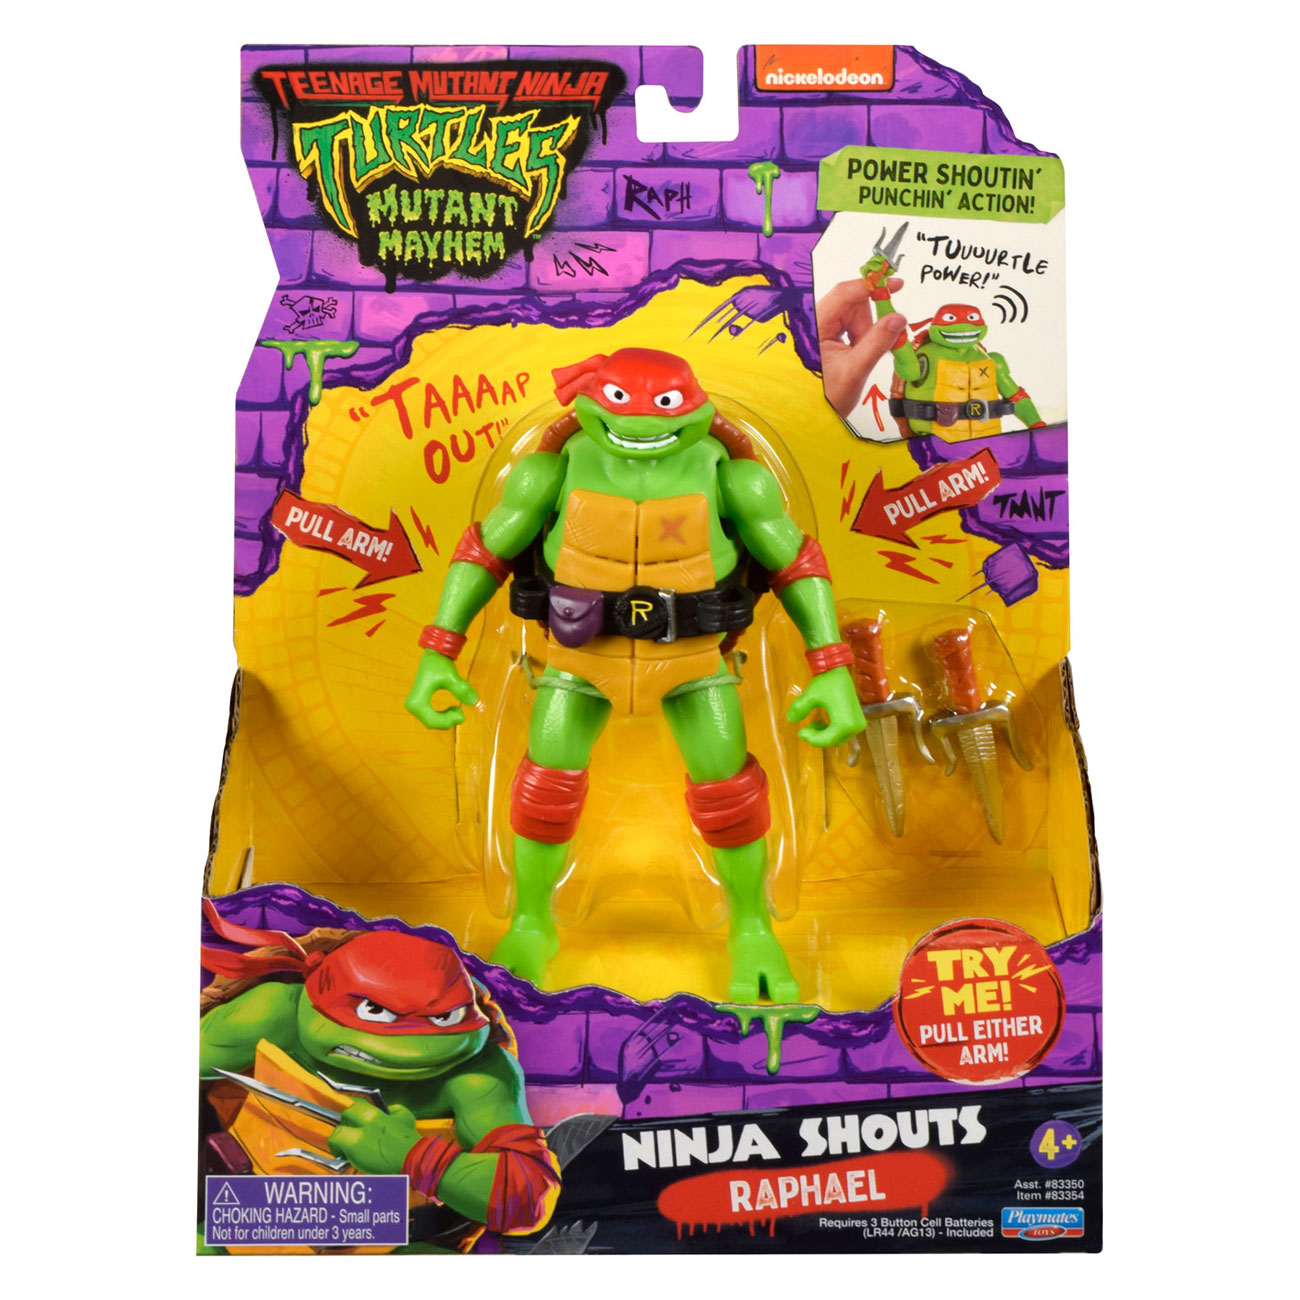 Teenage Mutant Ninja Turtles Mutant Ninja Turtles Donatello Ninja Shouts